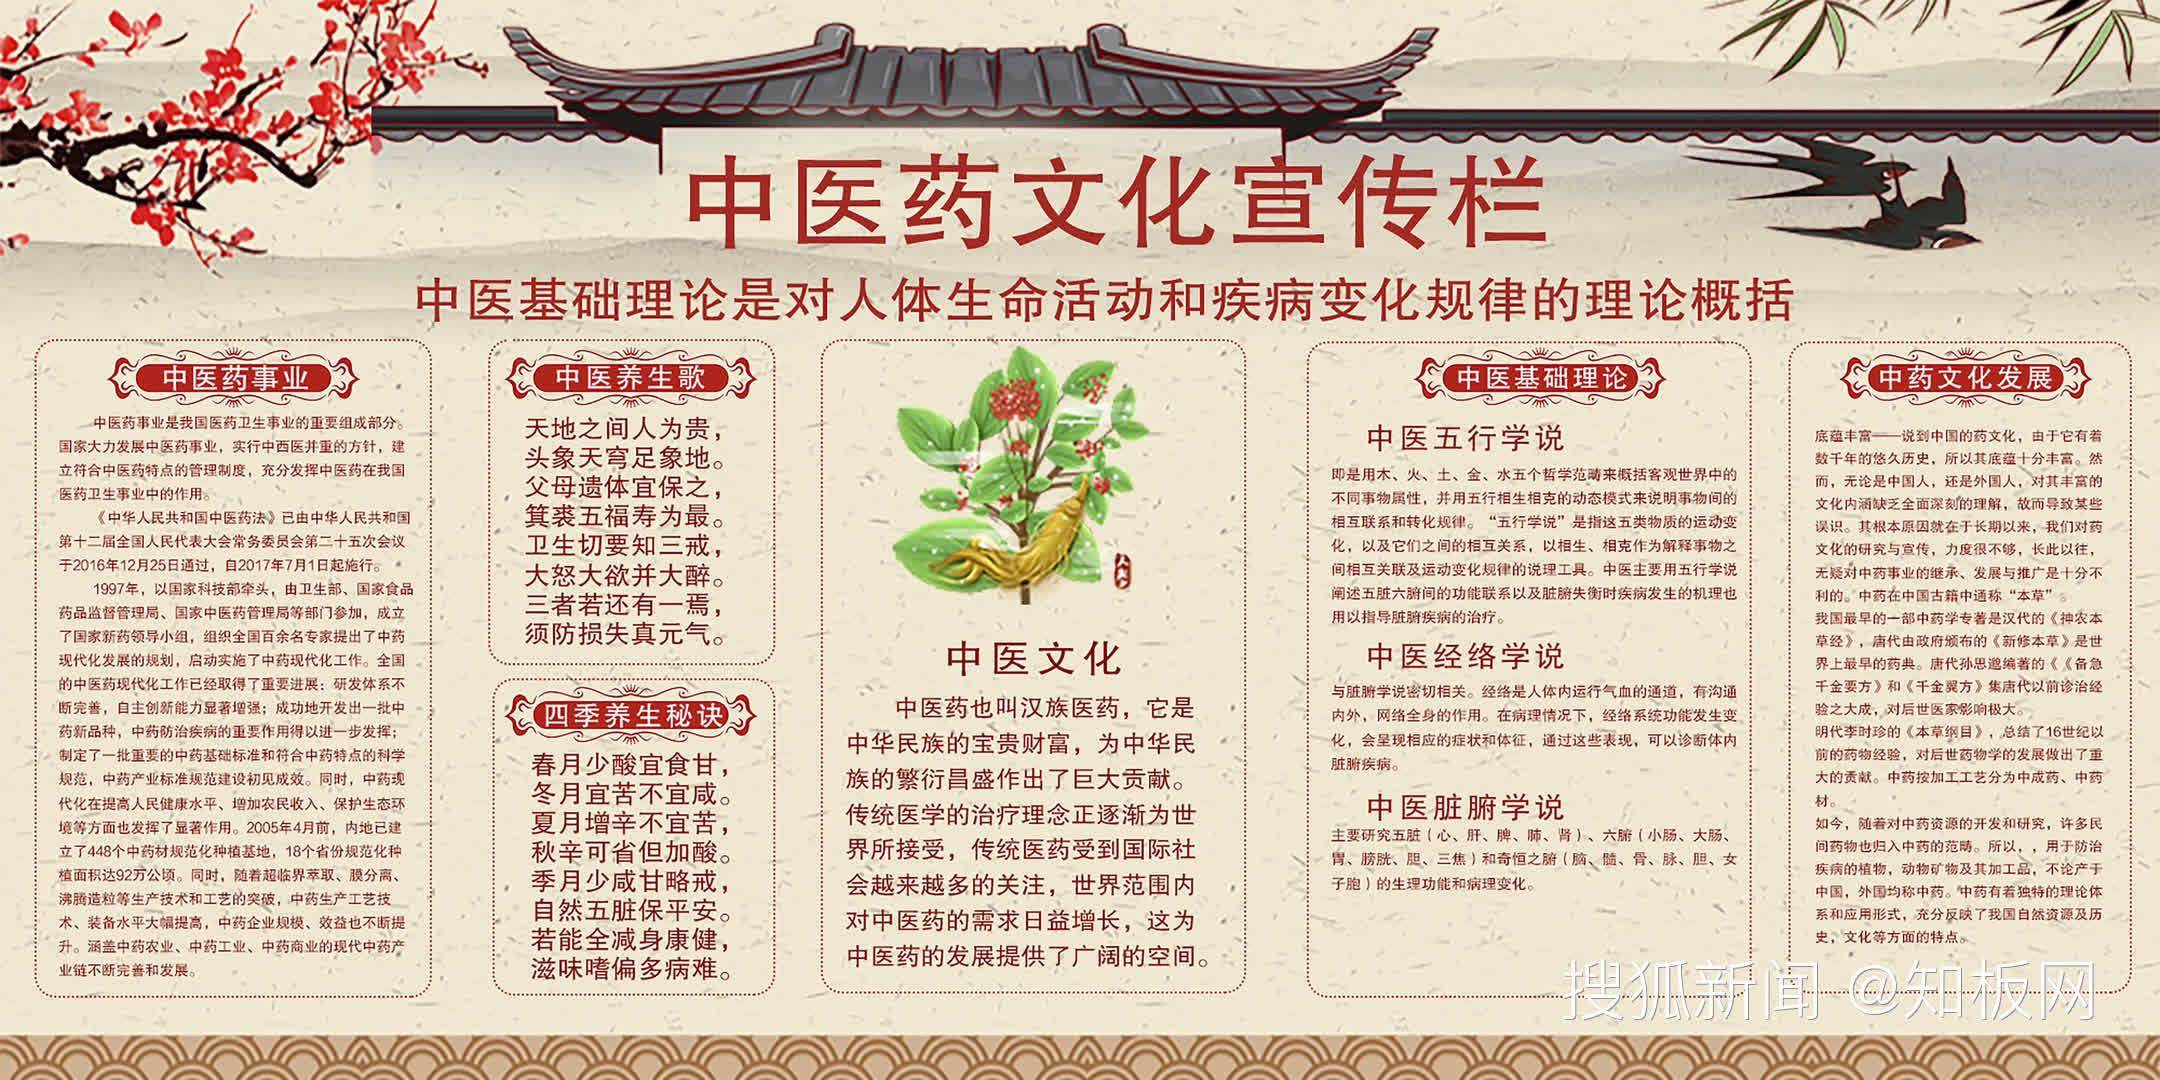 中医药知识文化宣传栏橱窗展板-第2张图片-天天中医网